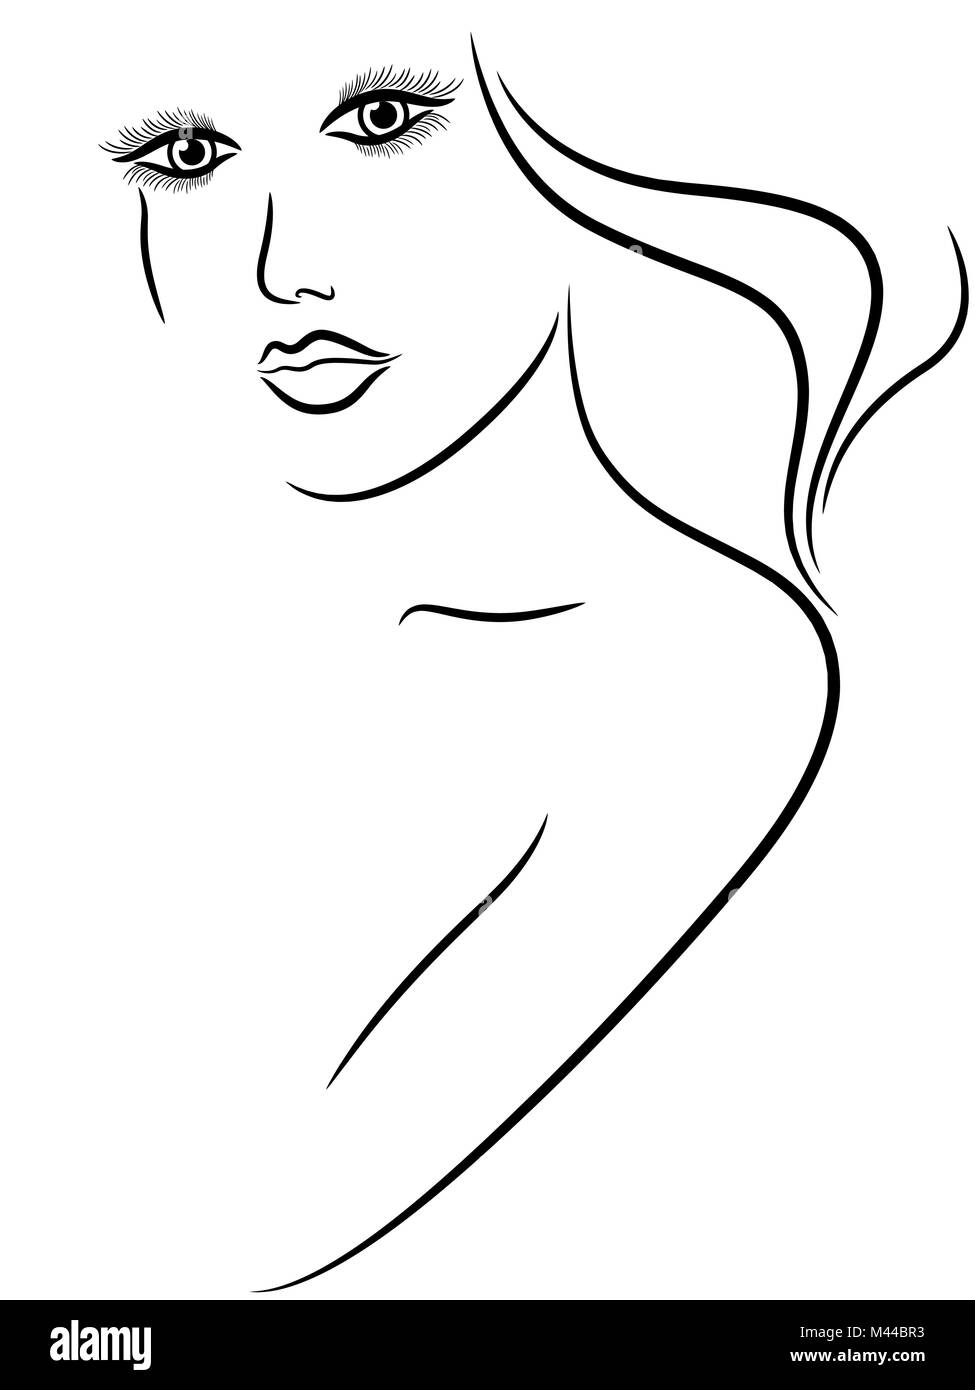 Abstract Ritratto Femminile Mano Disegno Vettoriale Di Contorno Immagine E Vettoriale Alamy